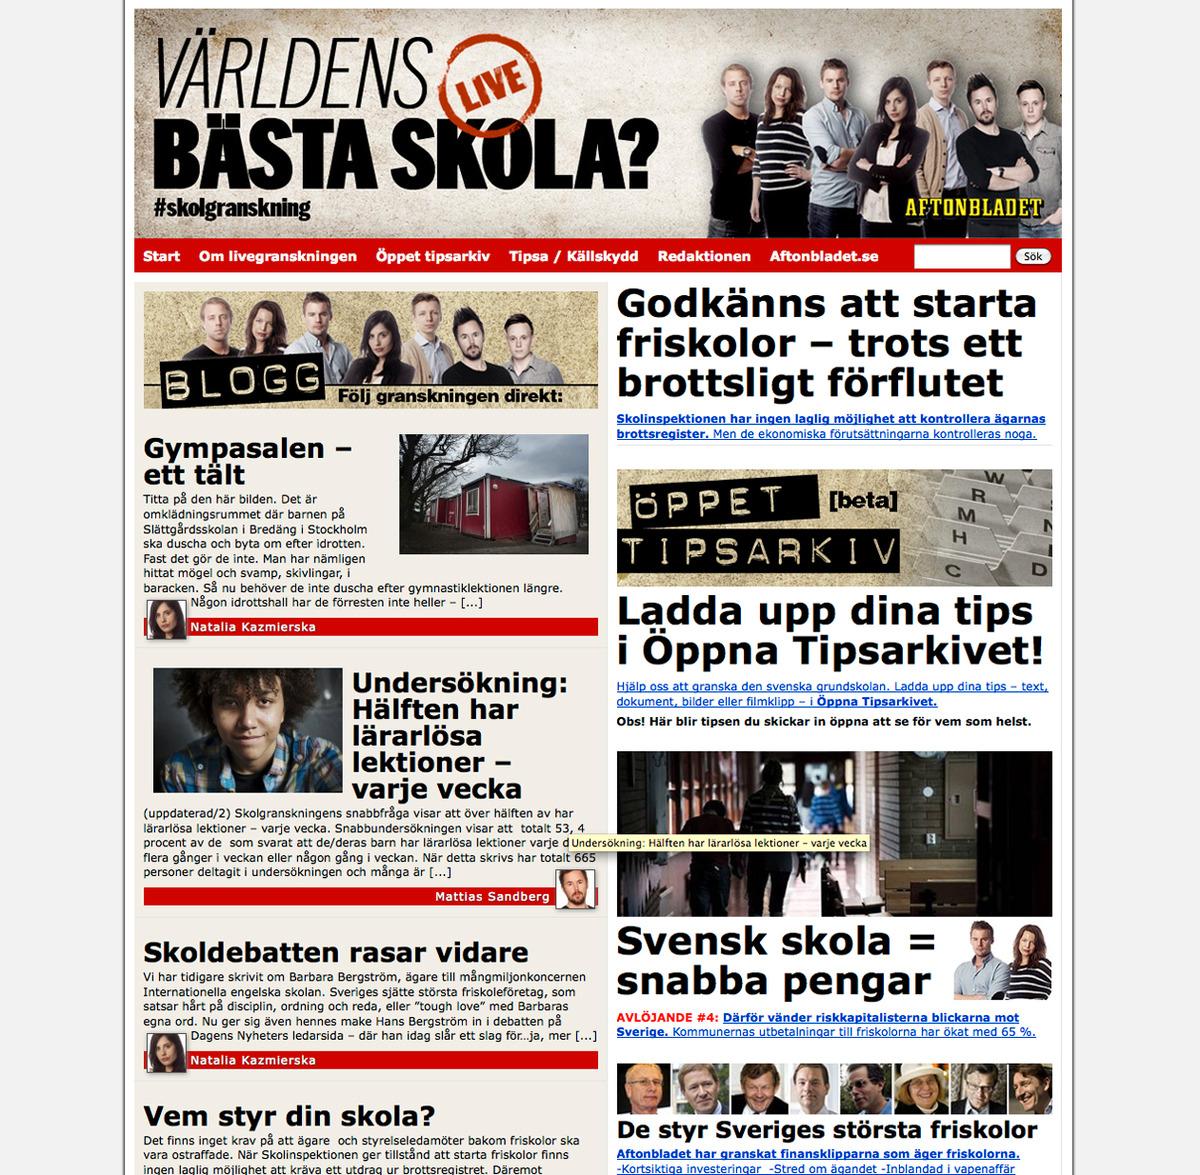 Webbsidan för Aftonbladets skolgranskning.